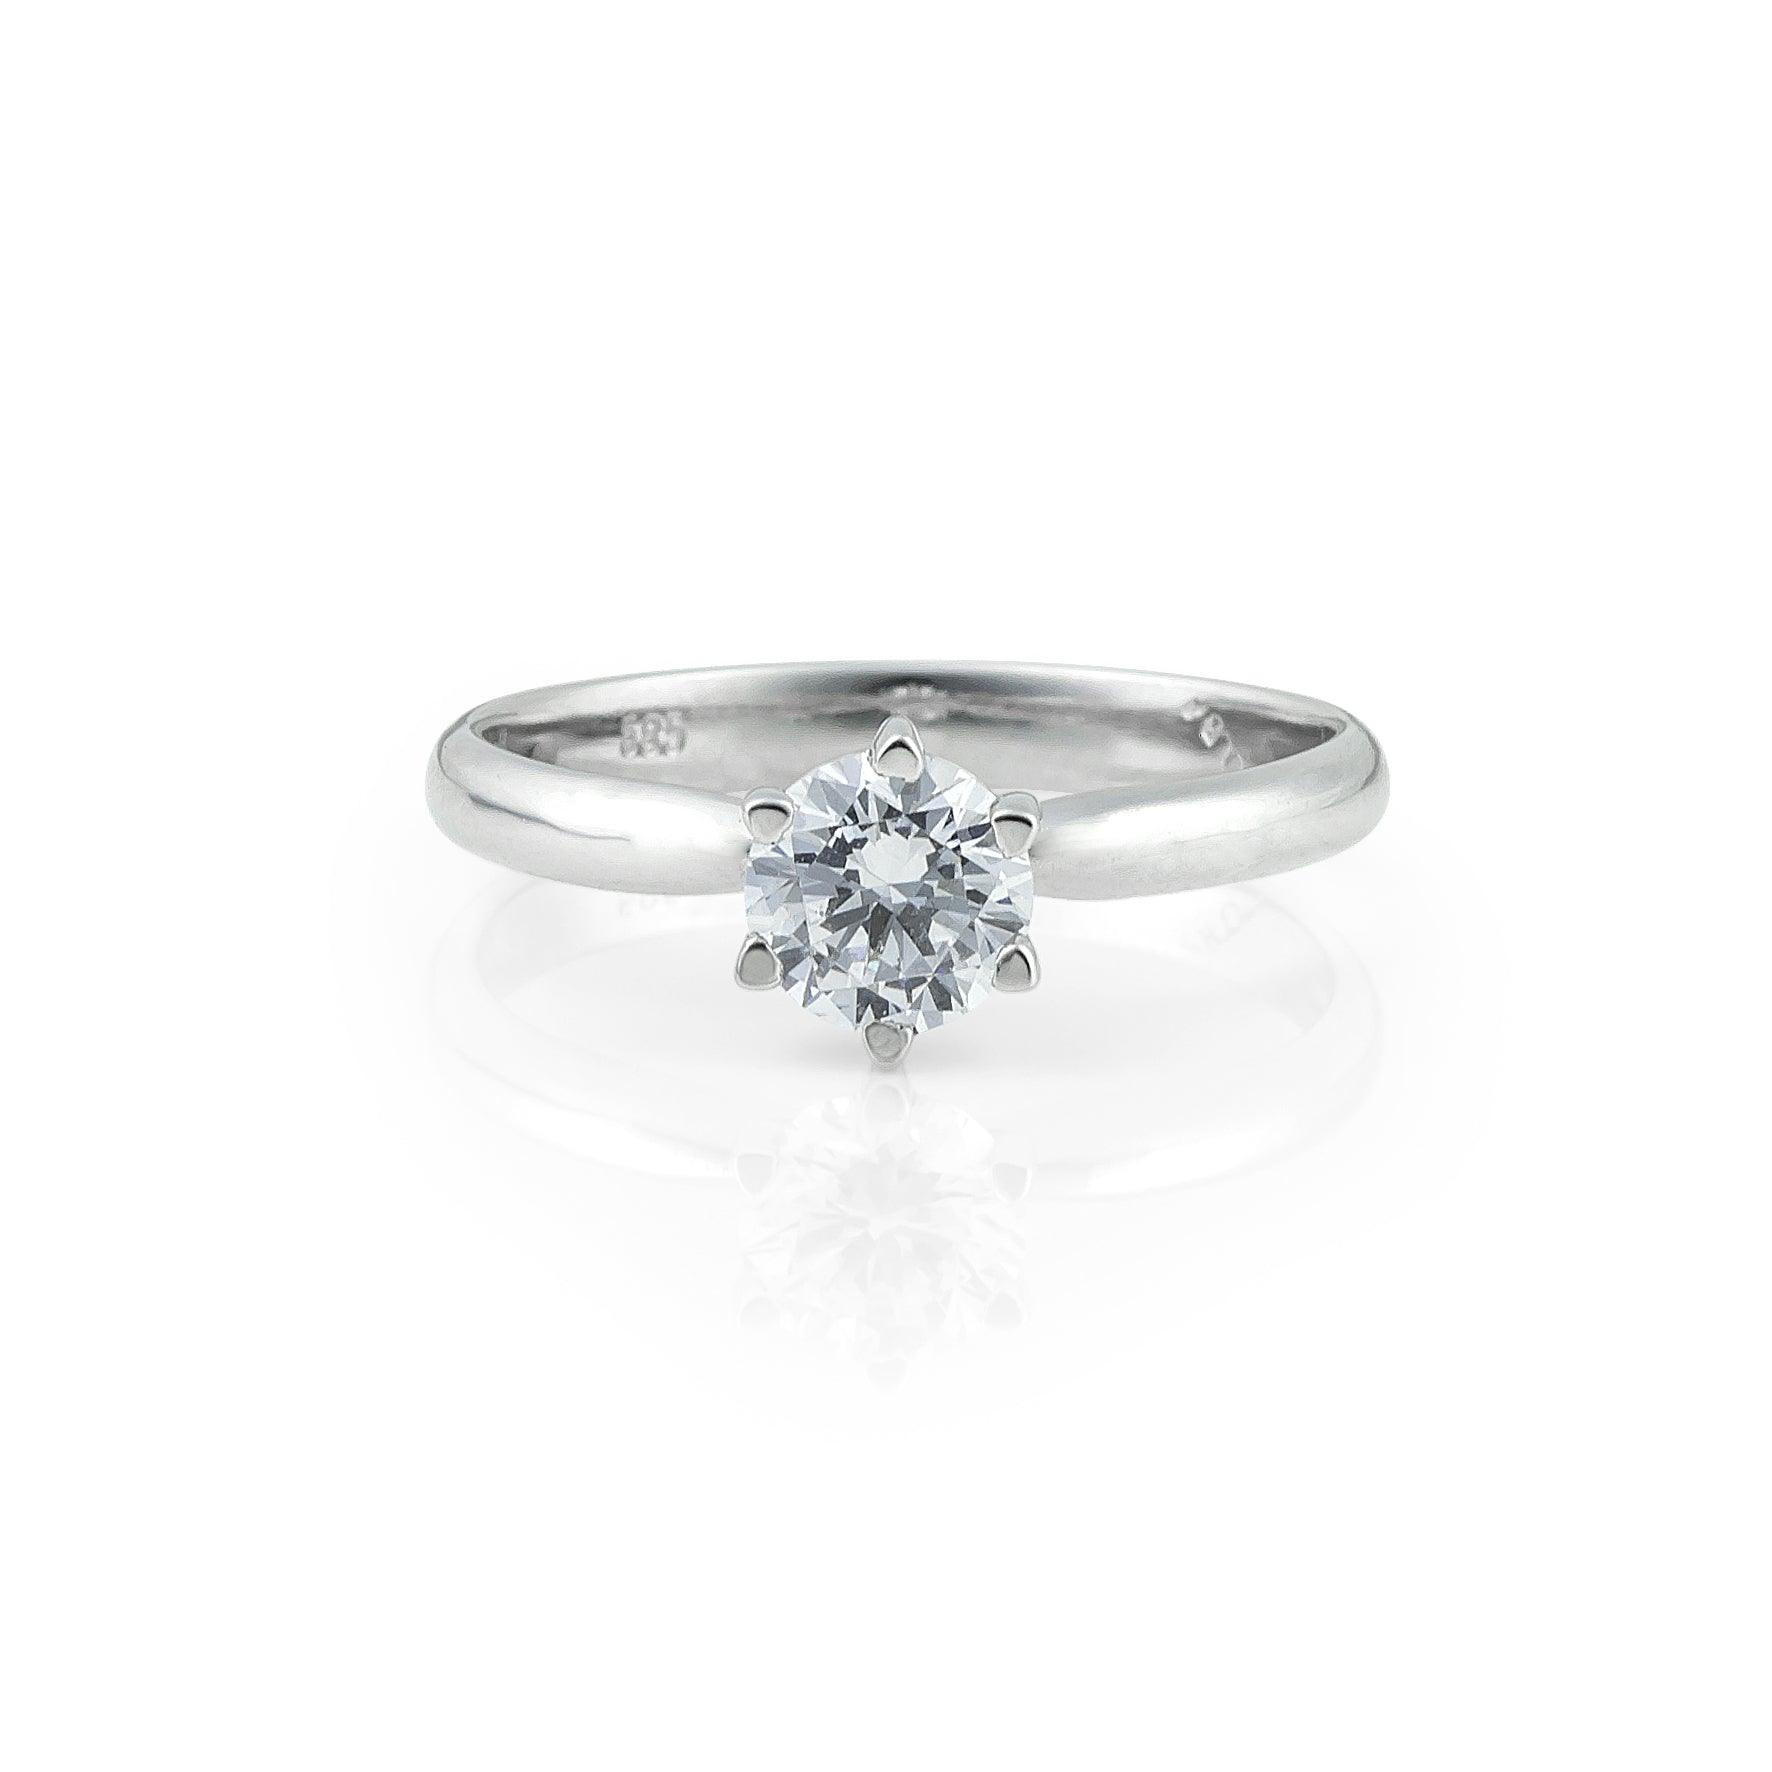 Λευκόχρυσο μονόπετρο δαχτυλίδι με διαμάντι και εξάδοντο καστόνι.